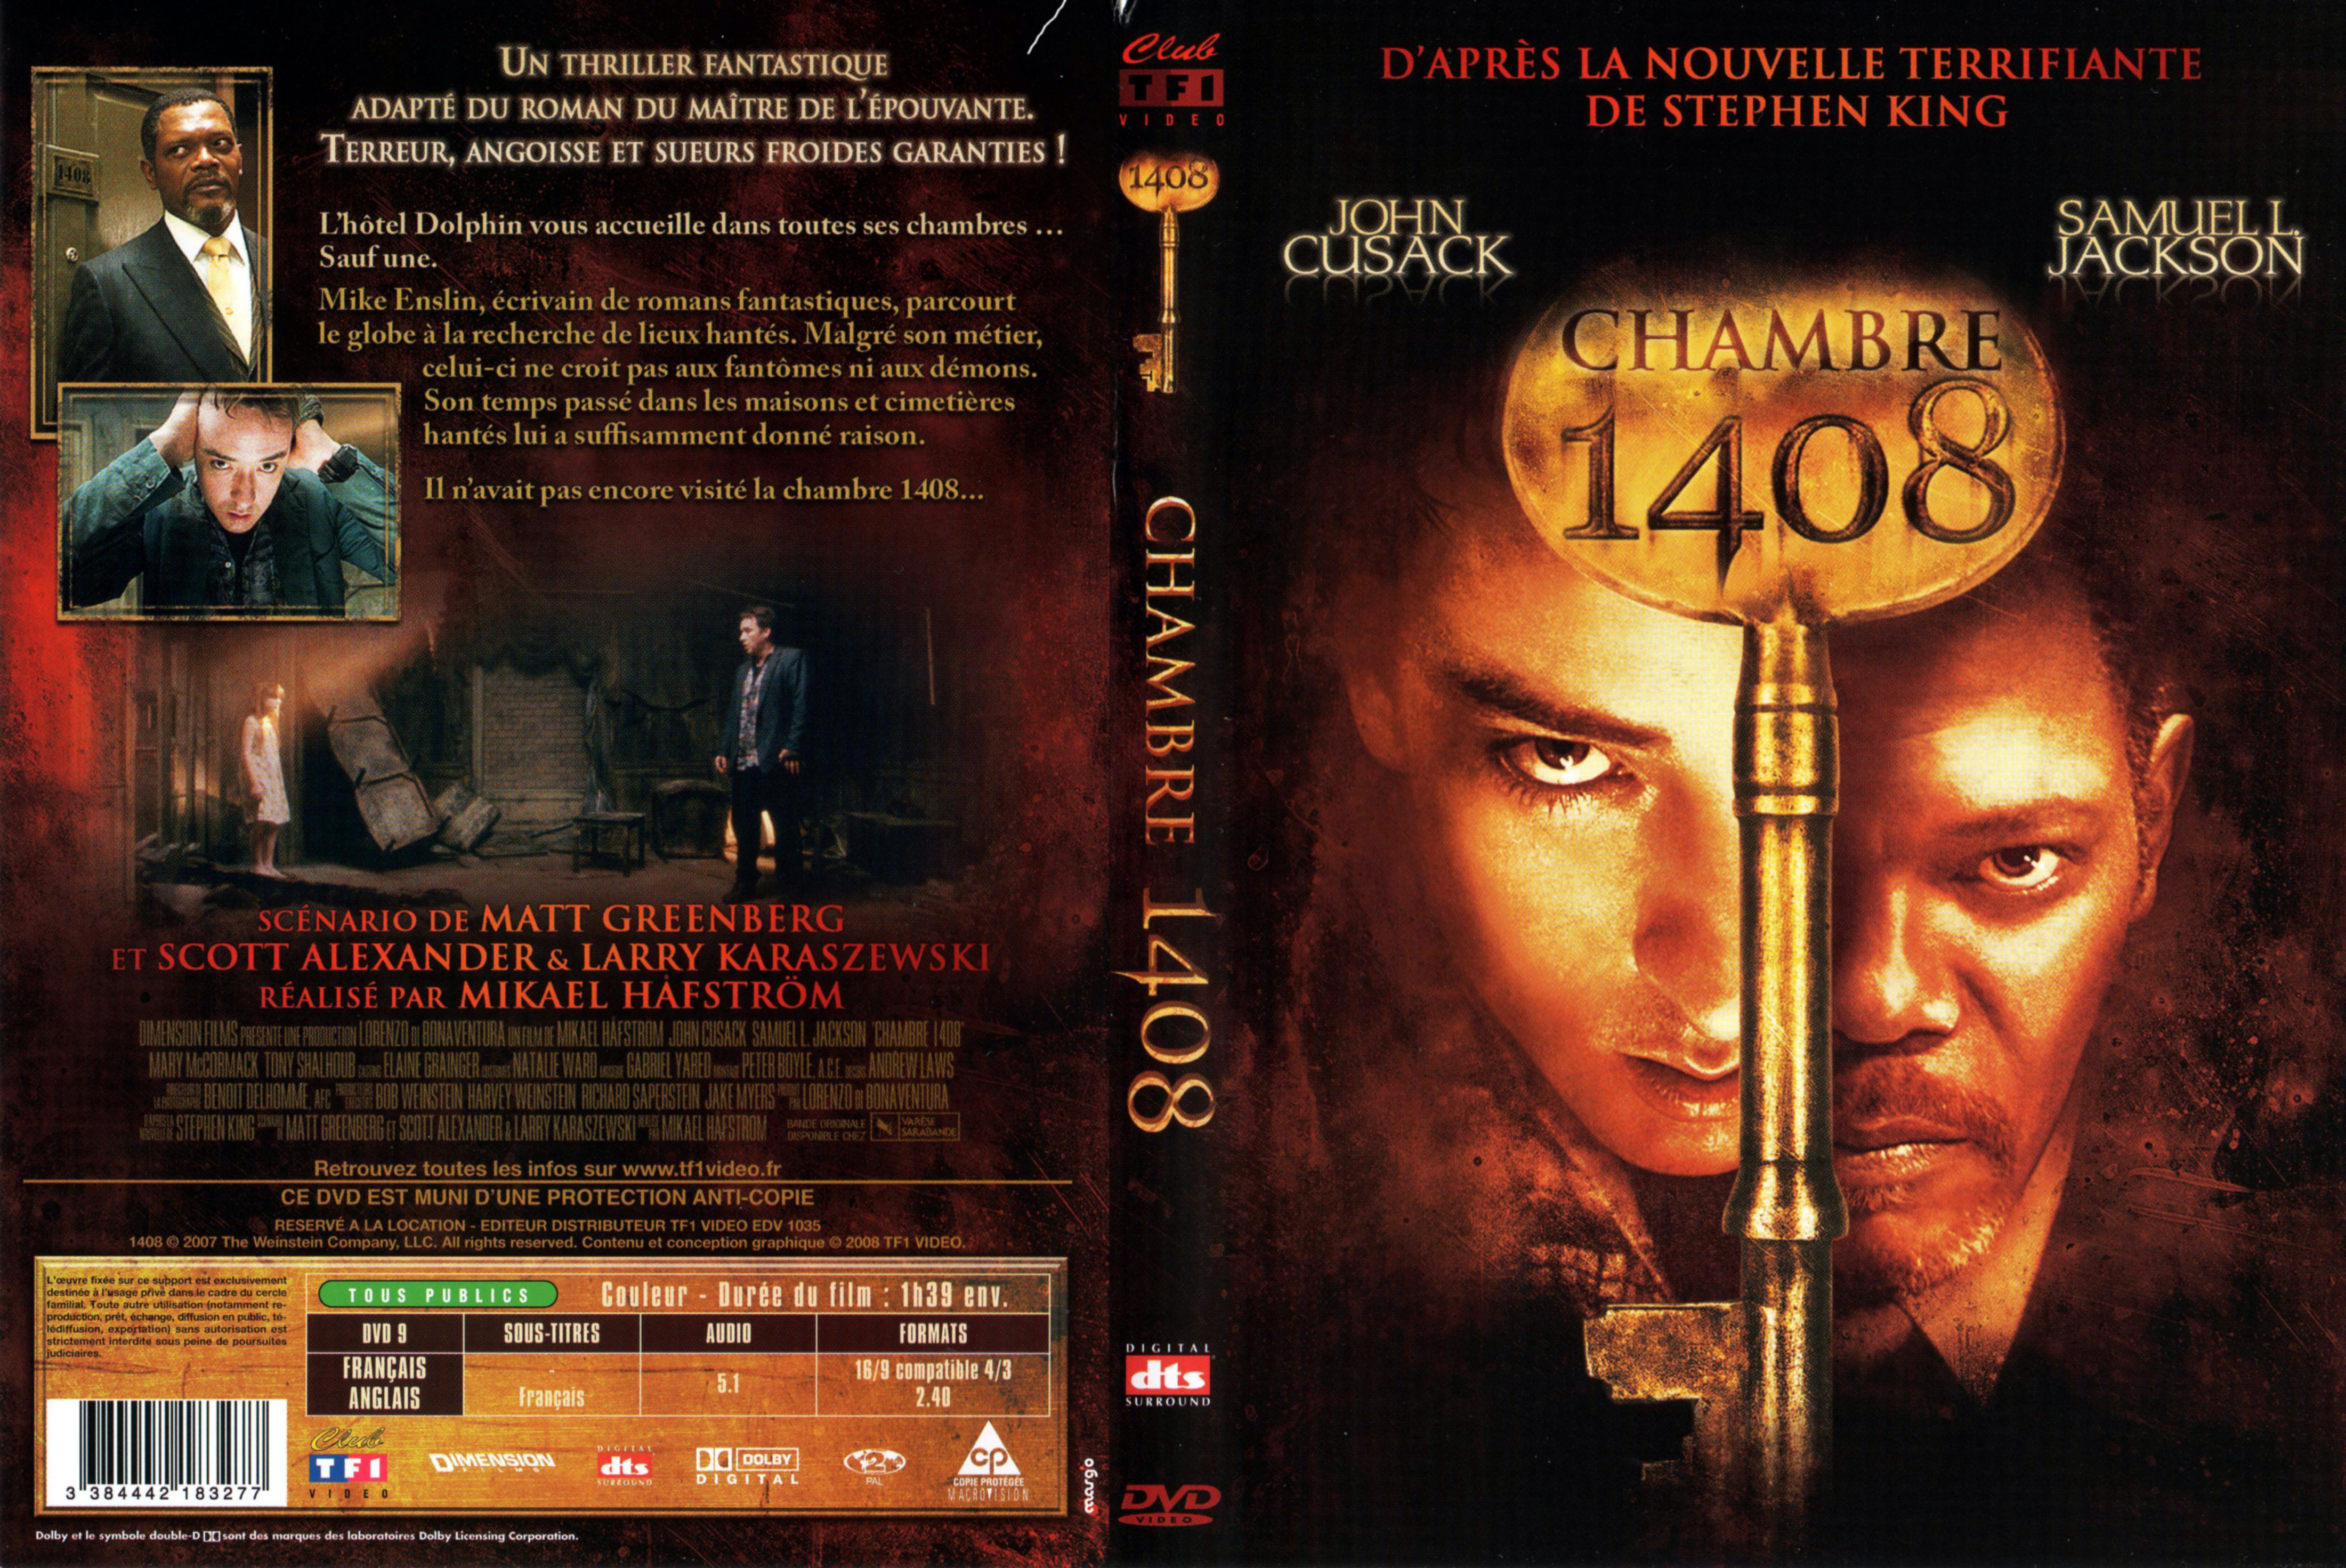 Jaquette DVD de Chambre 1408 Cinéma Passion